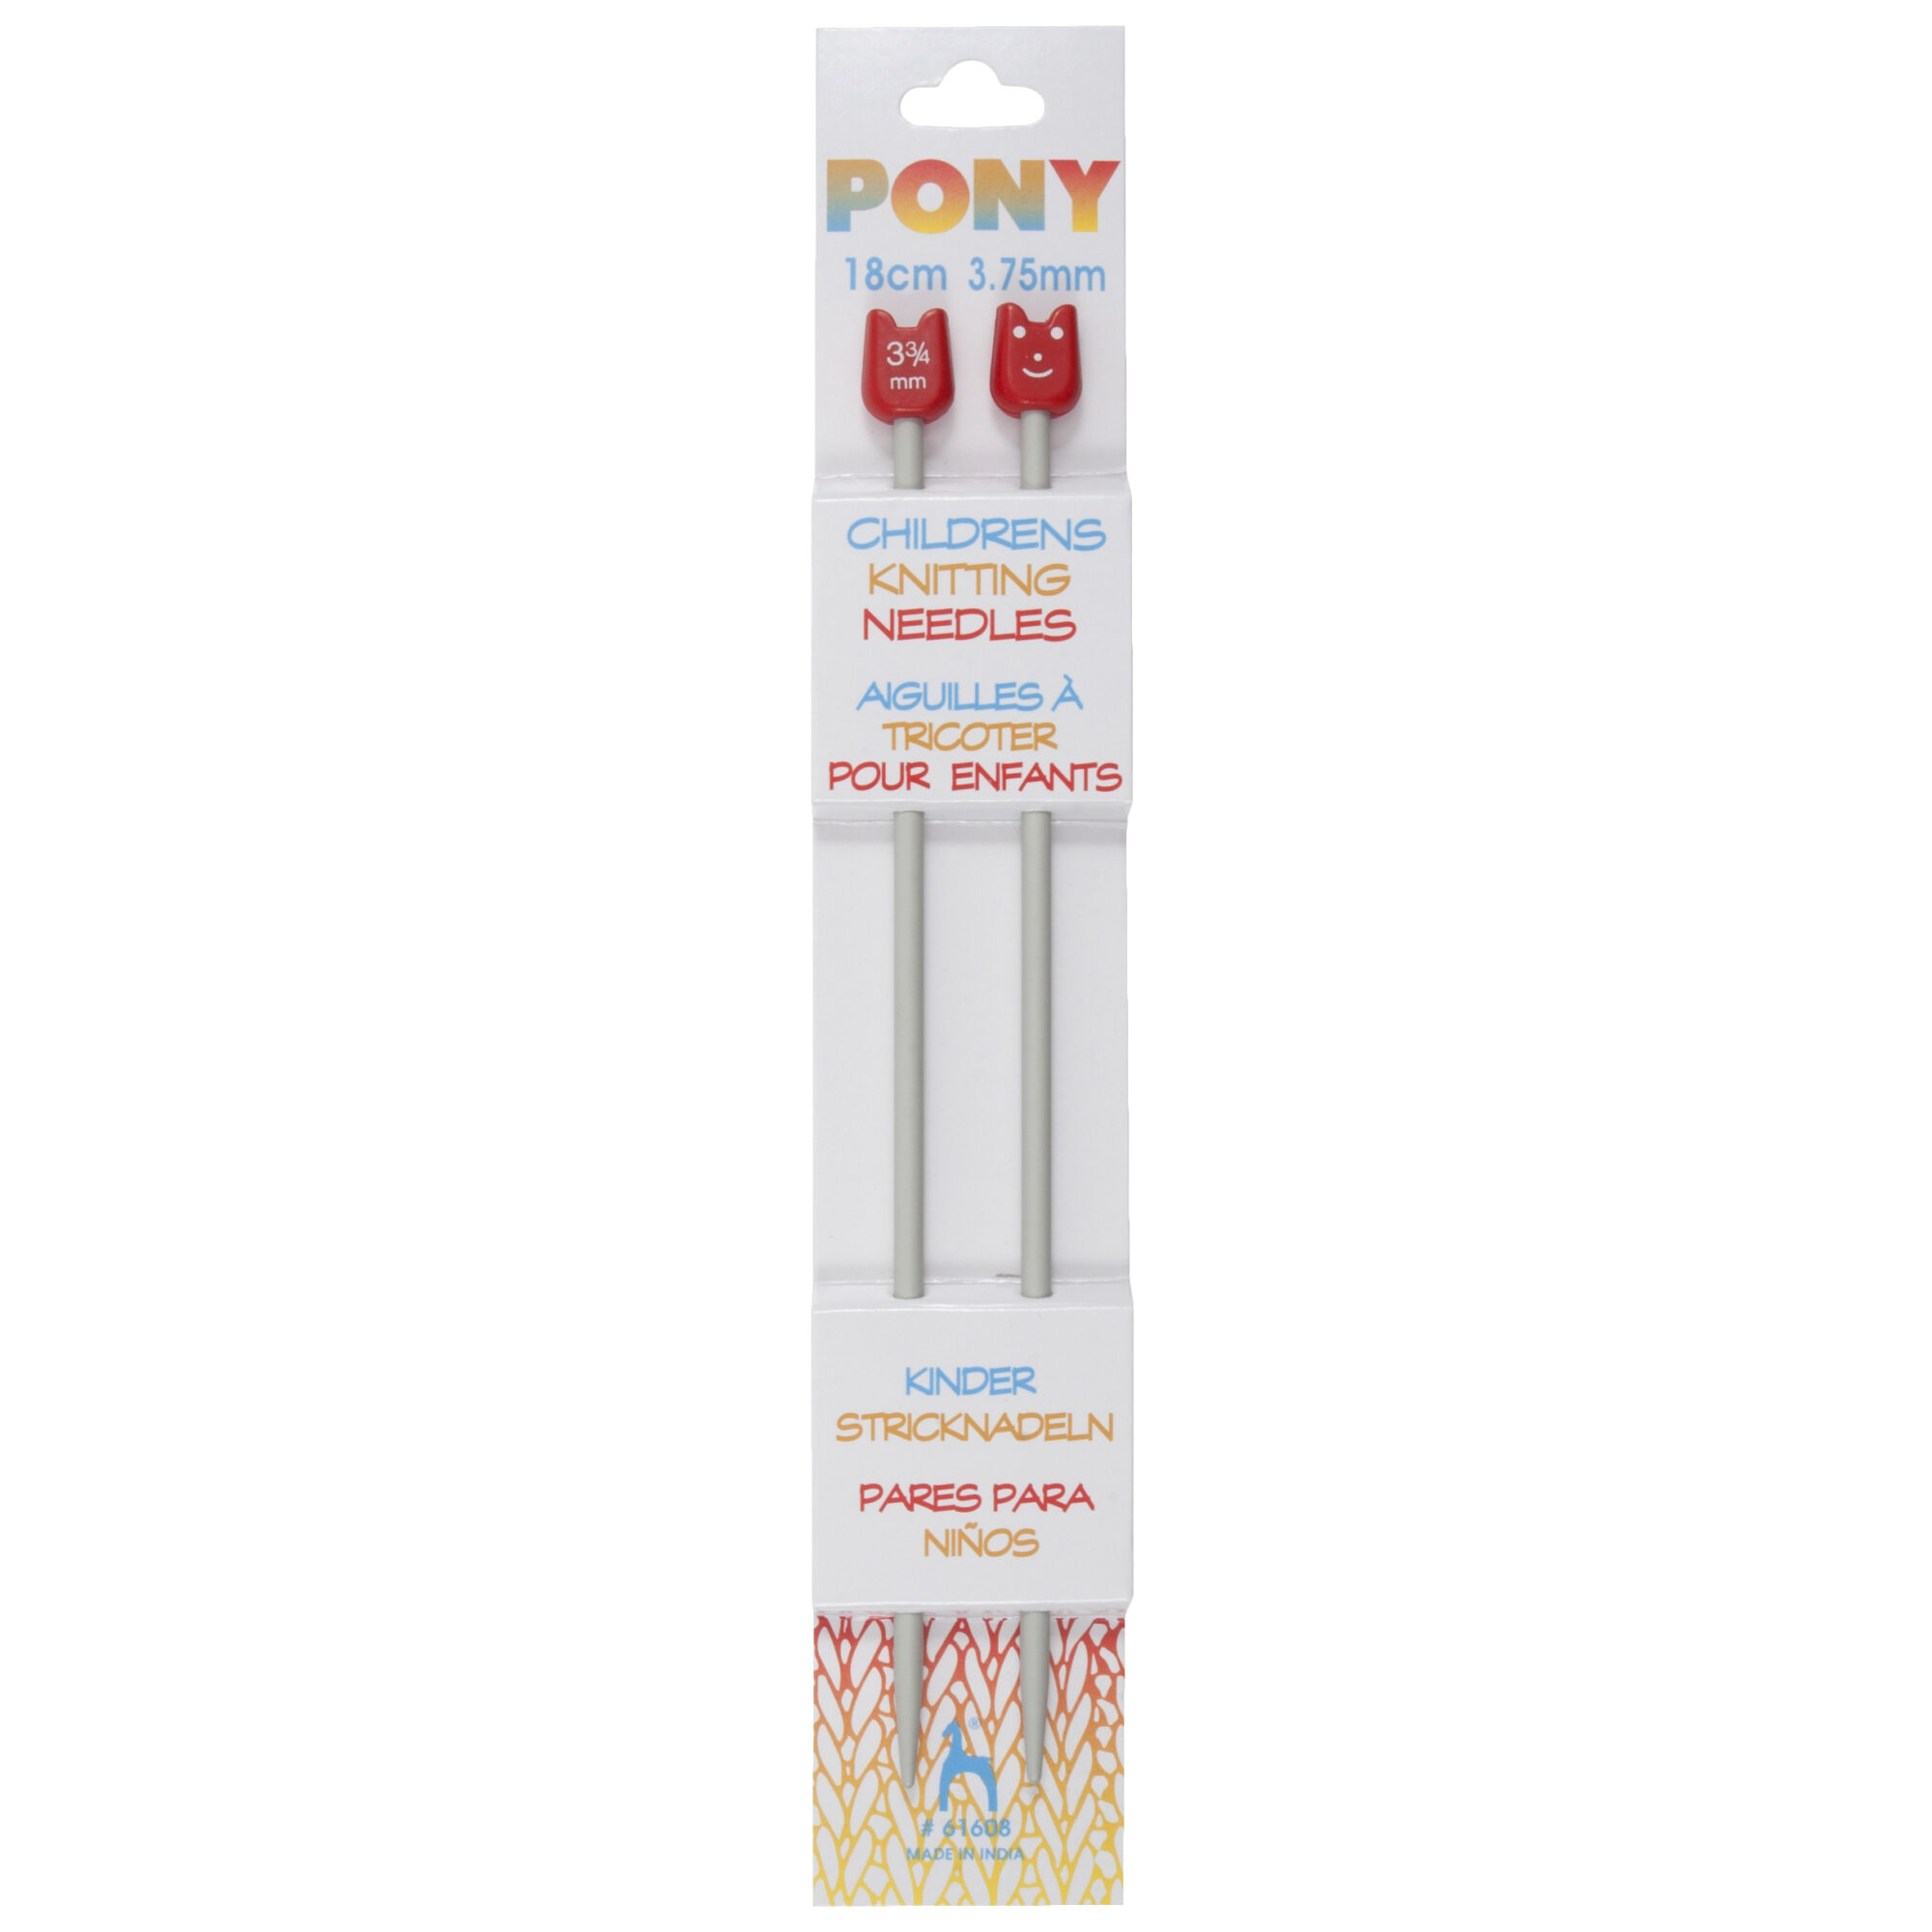 pony-childrens-knitting-needles-18cm-long